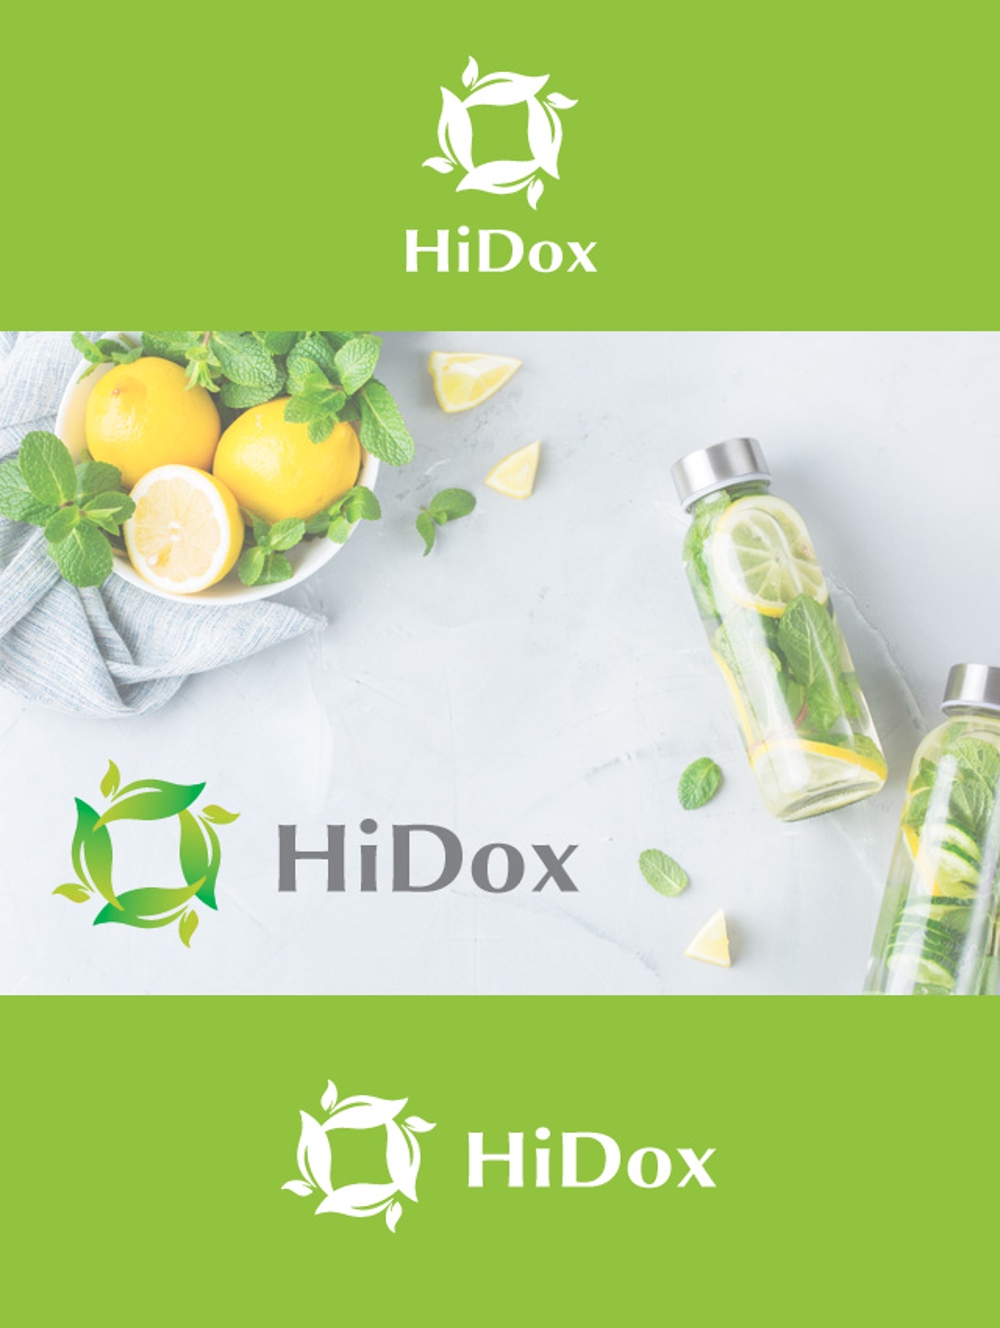 健康食品「HiDox」のブランドロゴ